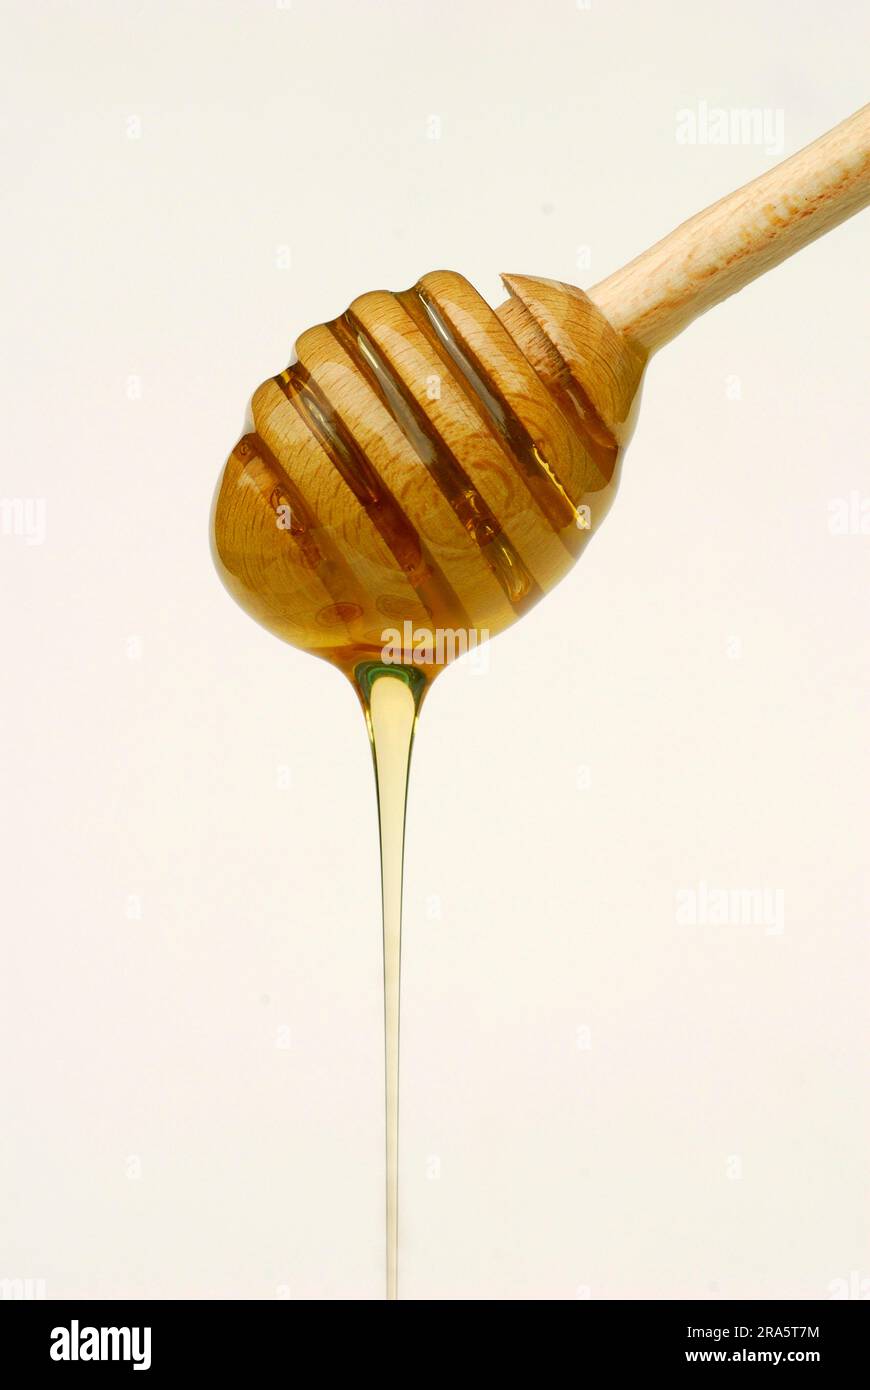 Cucchiaio con miele, cucchiaio di miele Foto stock - Alamy